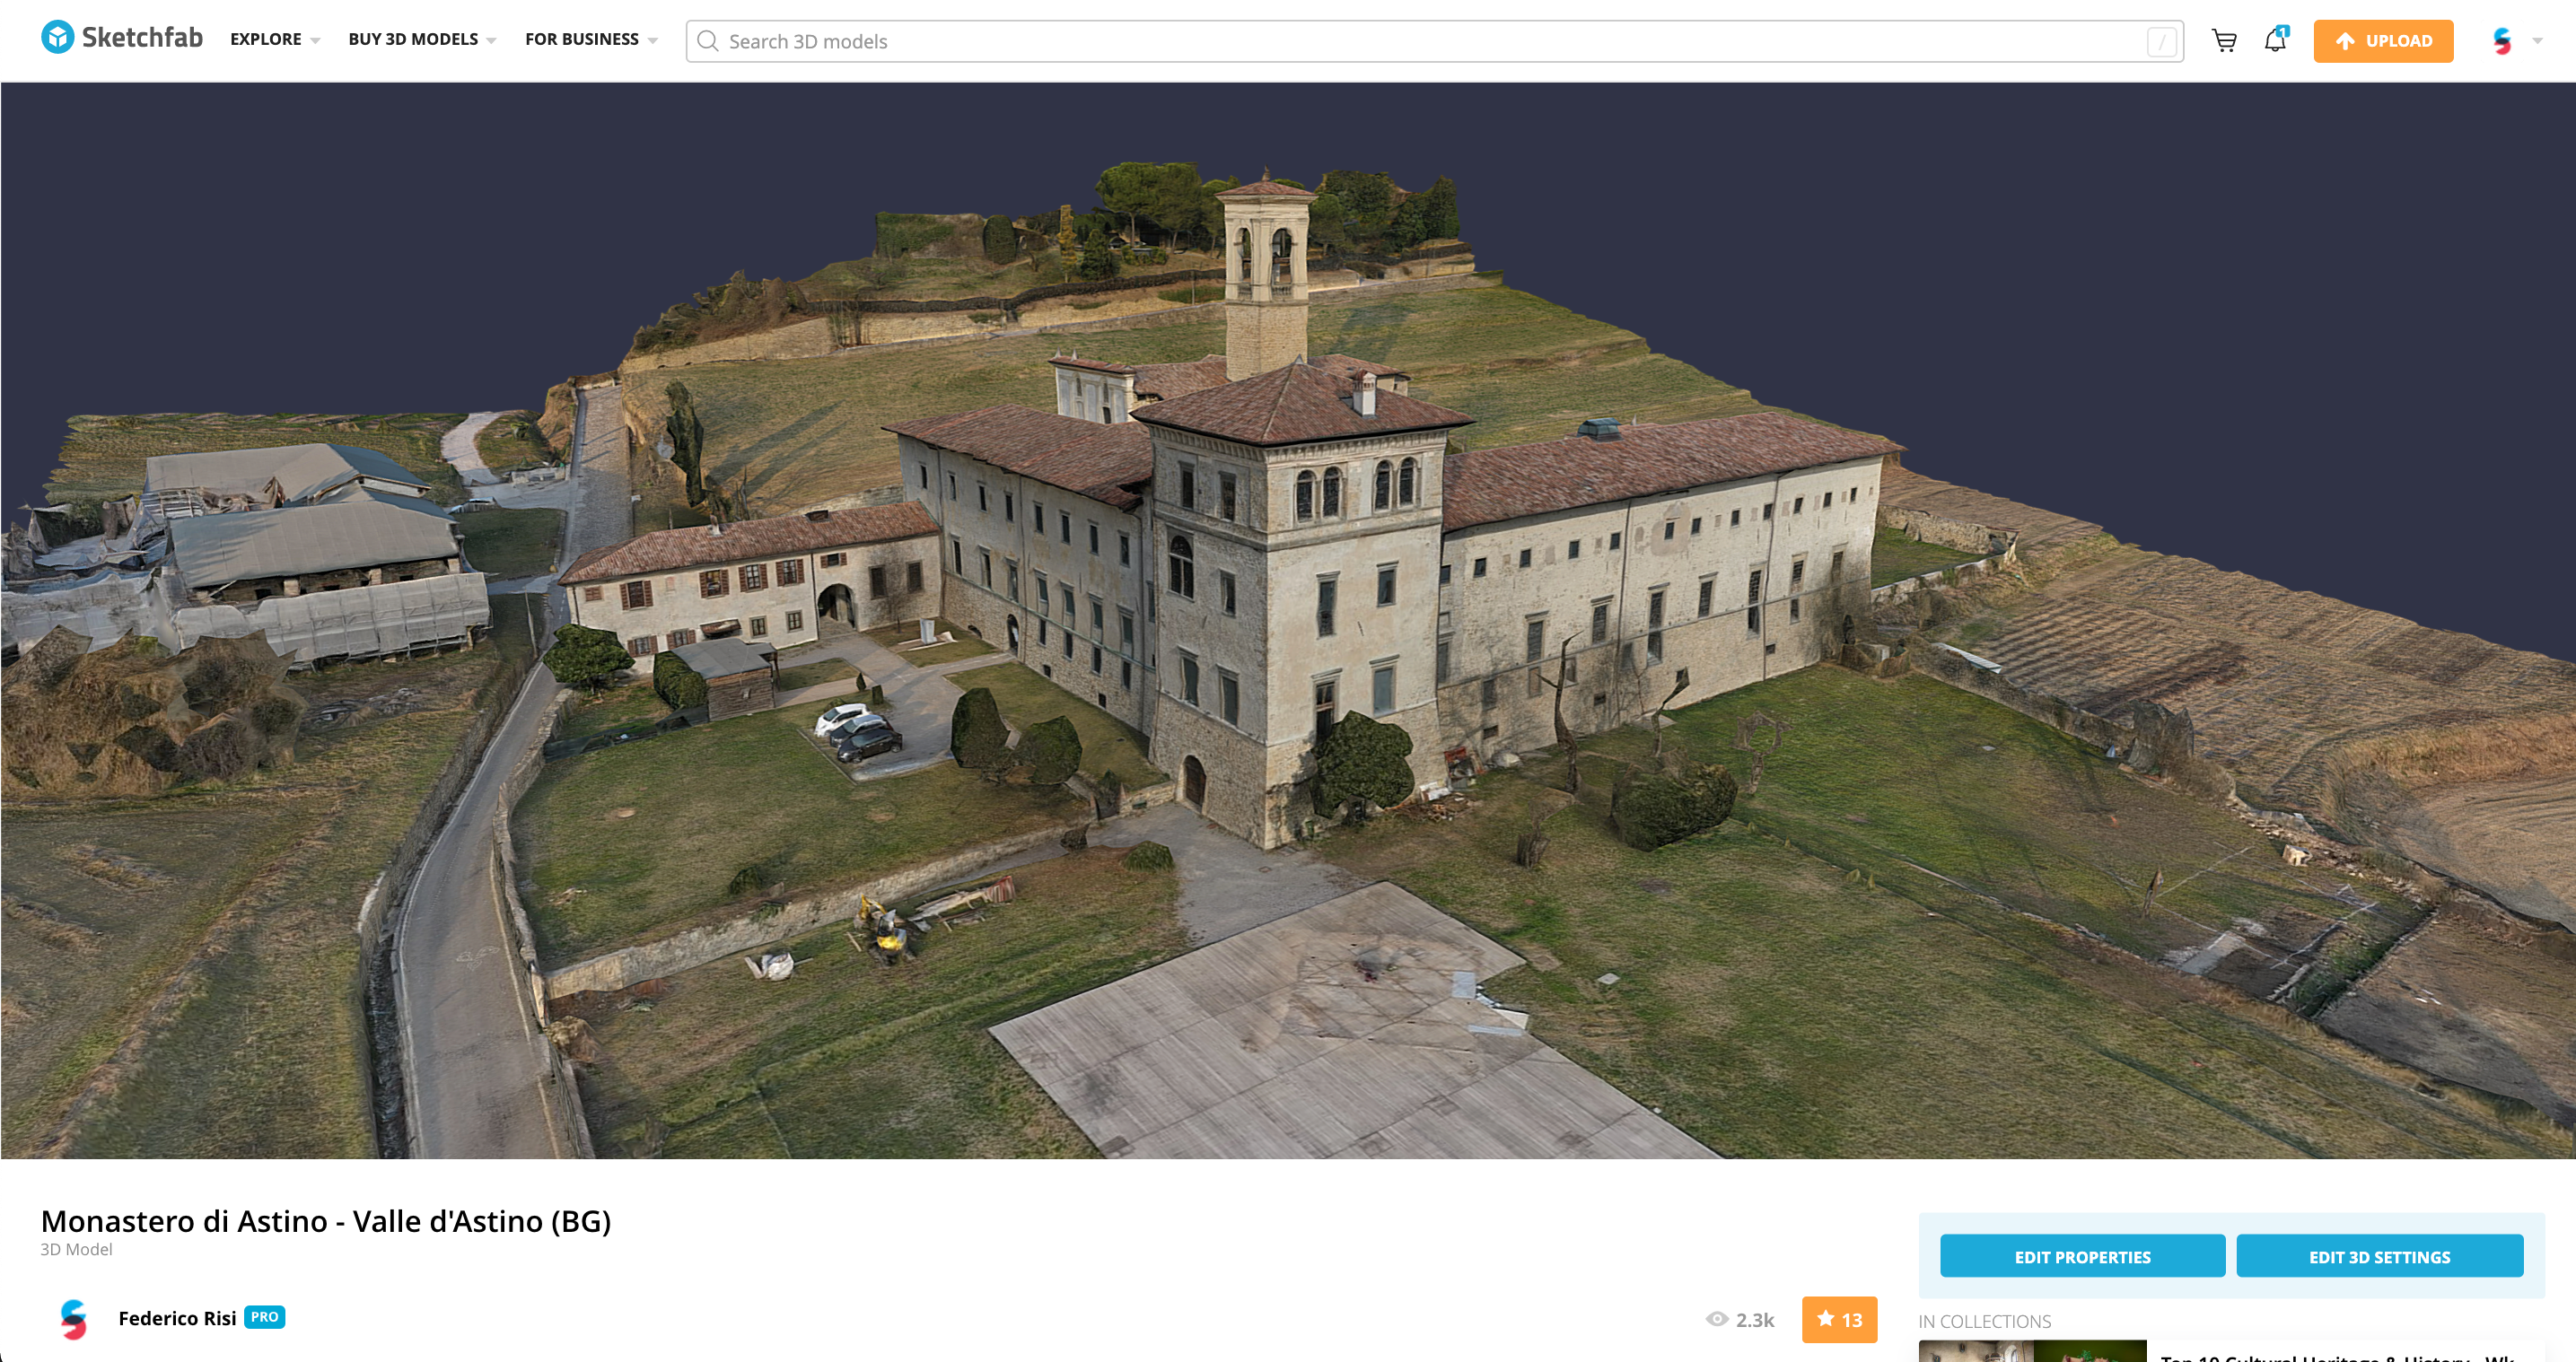 Droni, aerei e fotogrammetria: come Skycrab digitalizza il patrimonio storico e culturale by Sketchfab